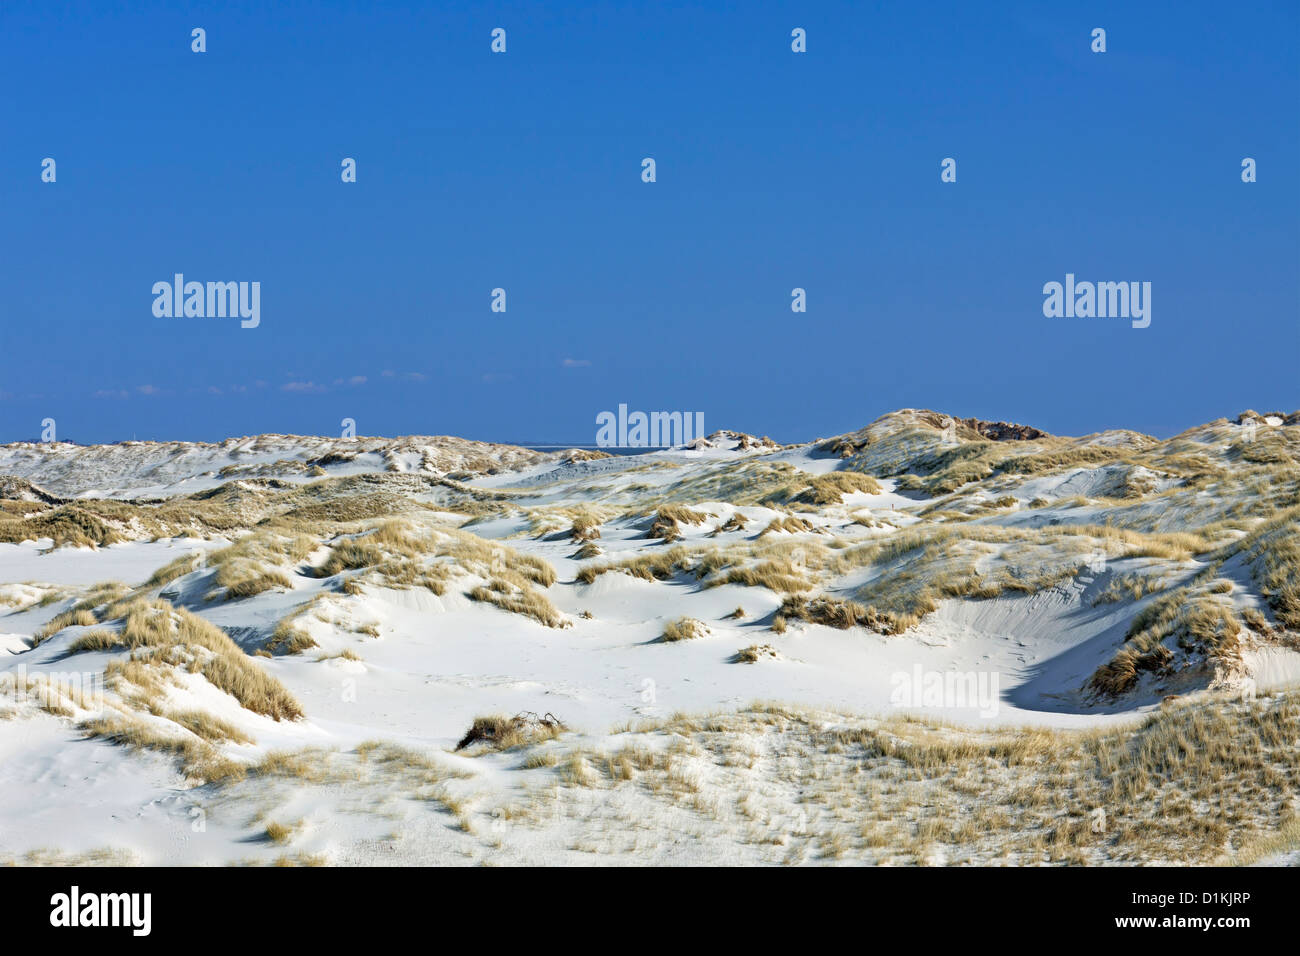 Dunes de sable avec l'ammophile à Amrum, îles frisonnes du Nord de la mer des Wadden allemande sur la côte de la mer du Nord, Allemagne Banque D'Images